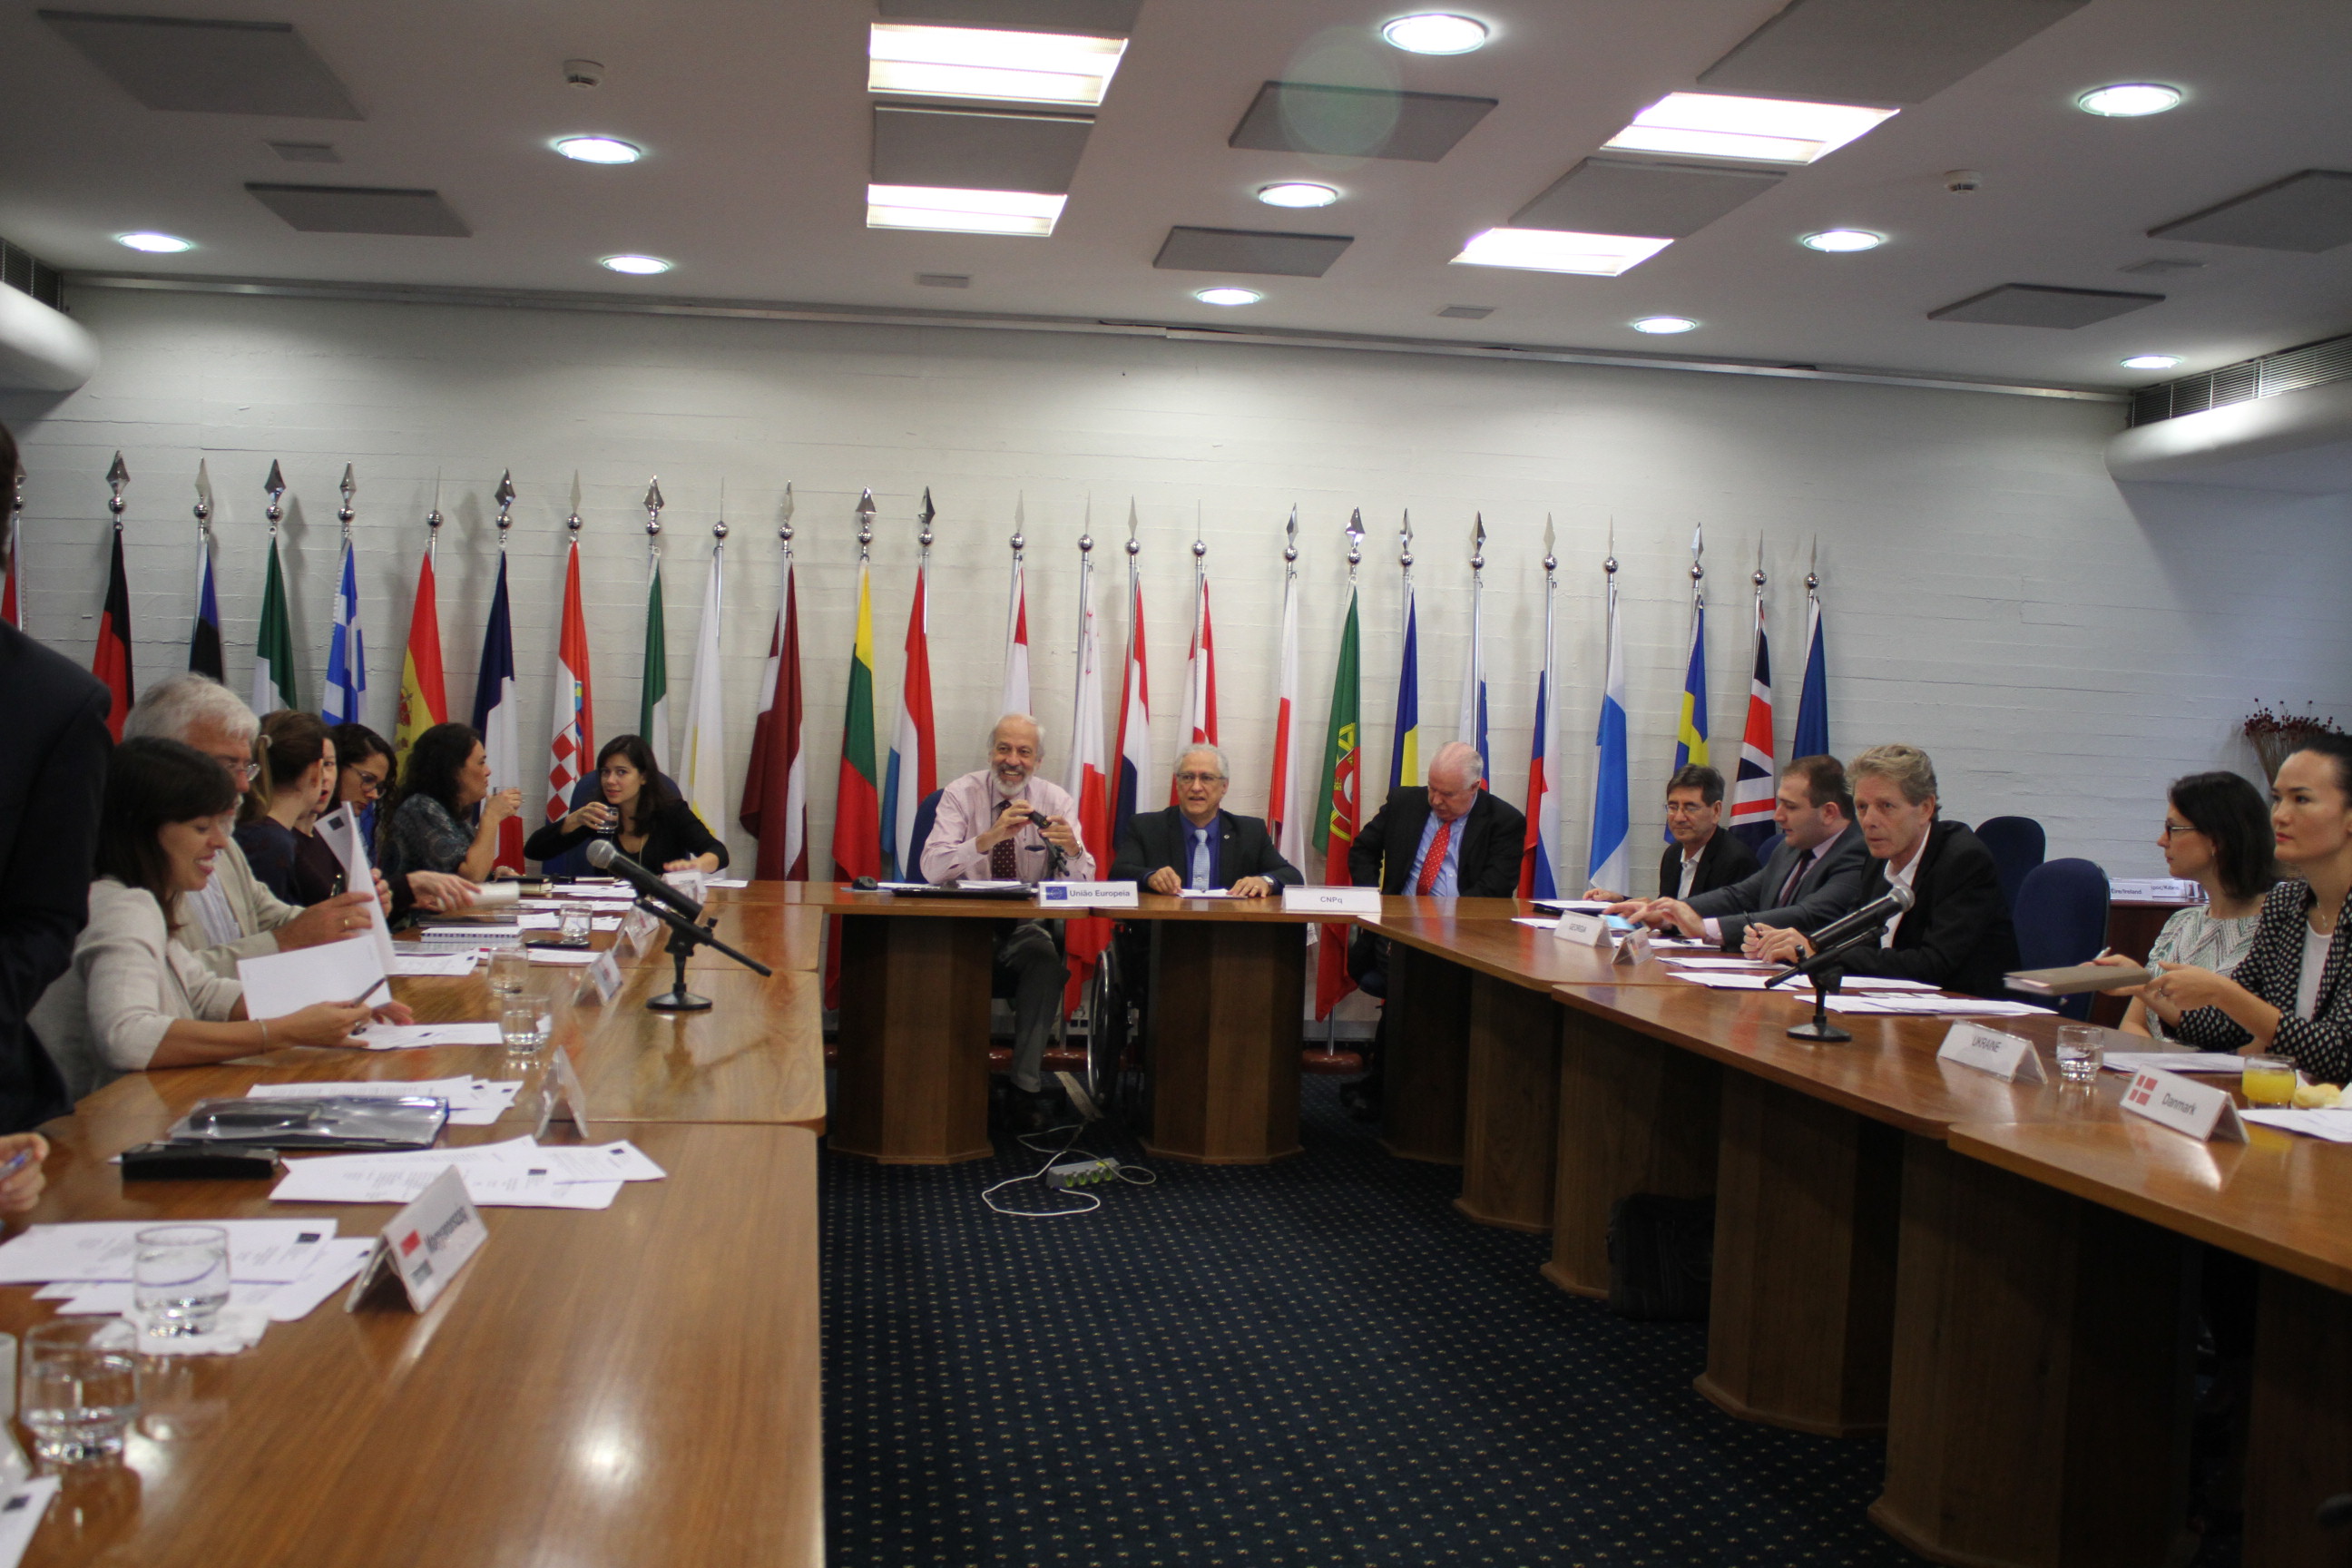  Palestra na reunião de Conselheiros de Ciência, Tecnologia e Inovação dos países membros da União Europeia - Fotos Marcelo Gondim